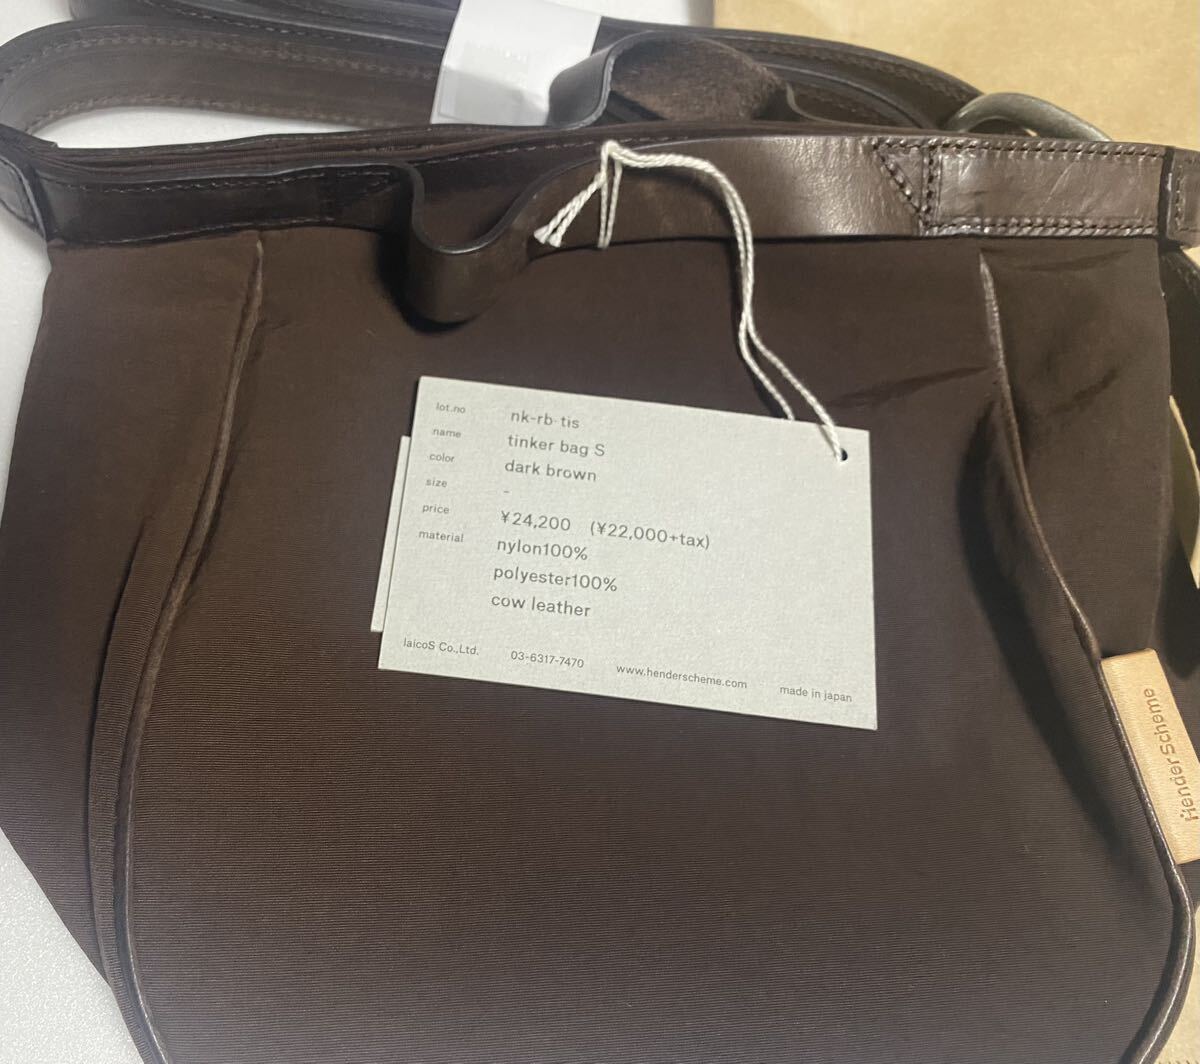 新品 未使用 21SS hender scheme エンダースキーマ tinker bag S (nk-rb-tis) dark brown ティンカーバッグ エス_画像2